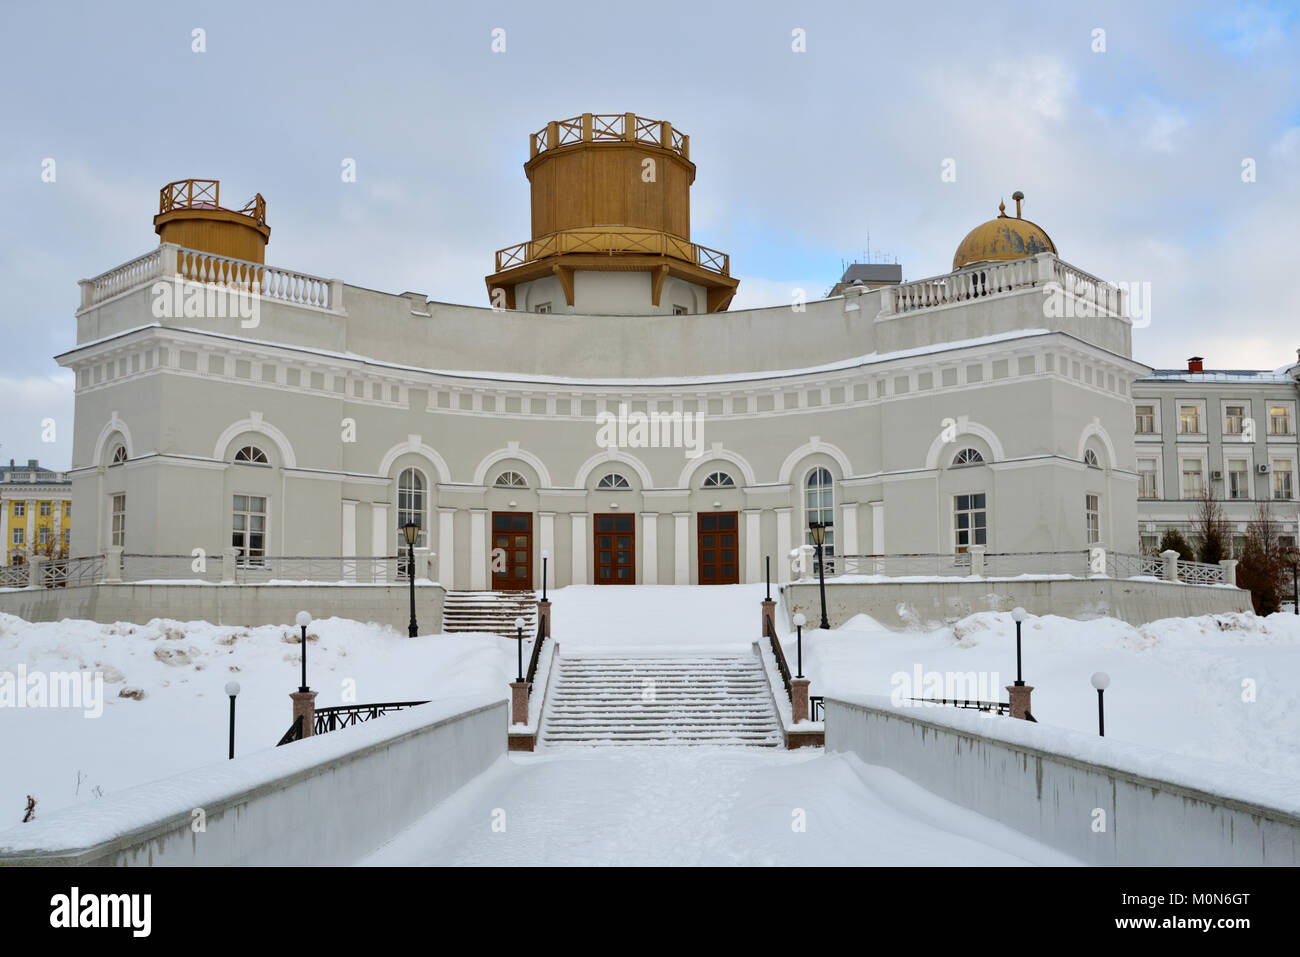 Kasan, Russland - Januar 4, 2015: Bau der Sternwarte der Kasaner Universität in einem Wintertag. Im Jahr 1810 fand, hat die Informationsstelle 23 cm re Stockfoto